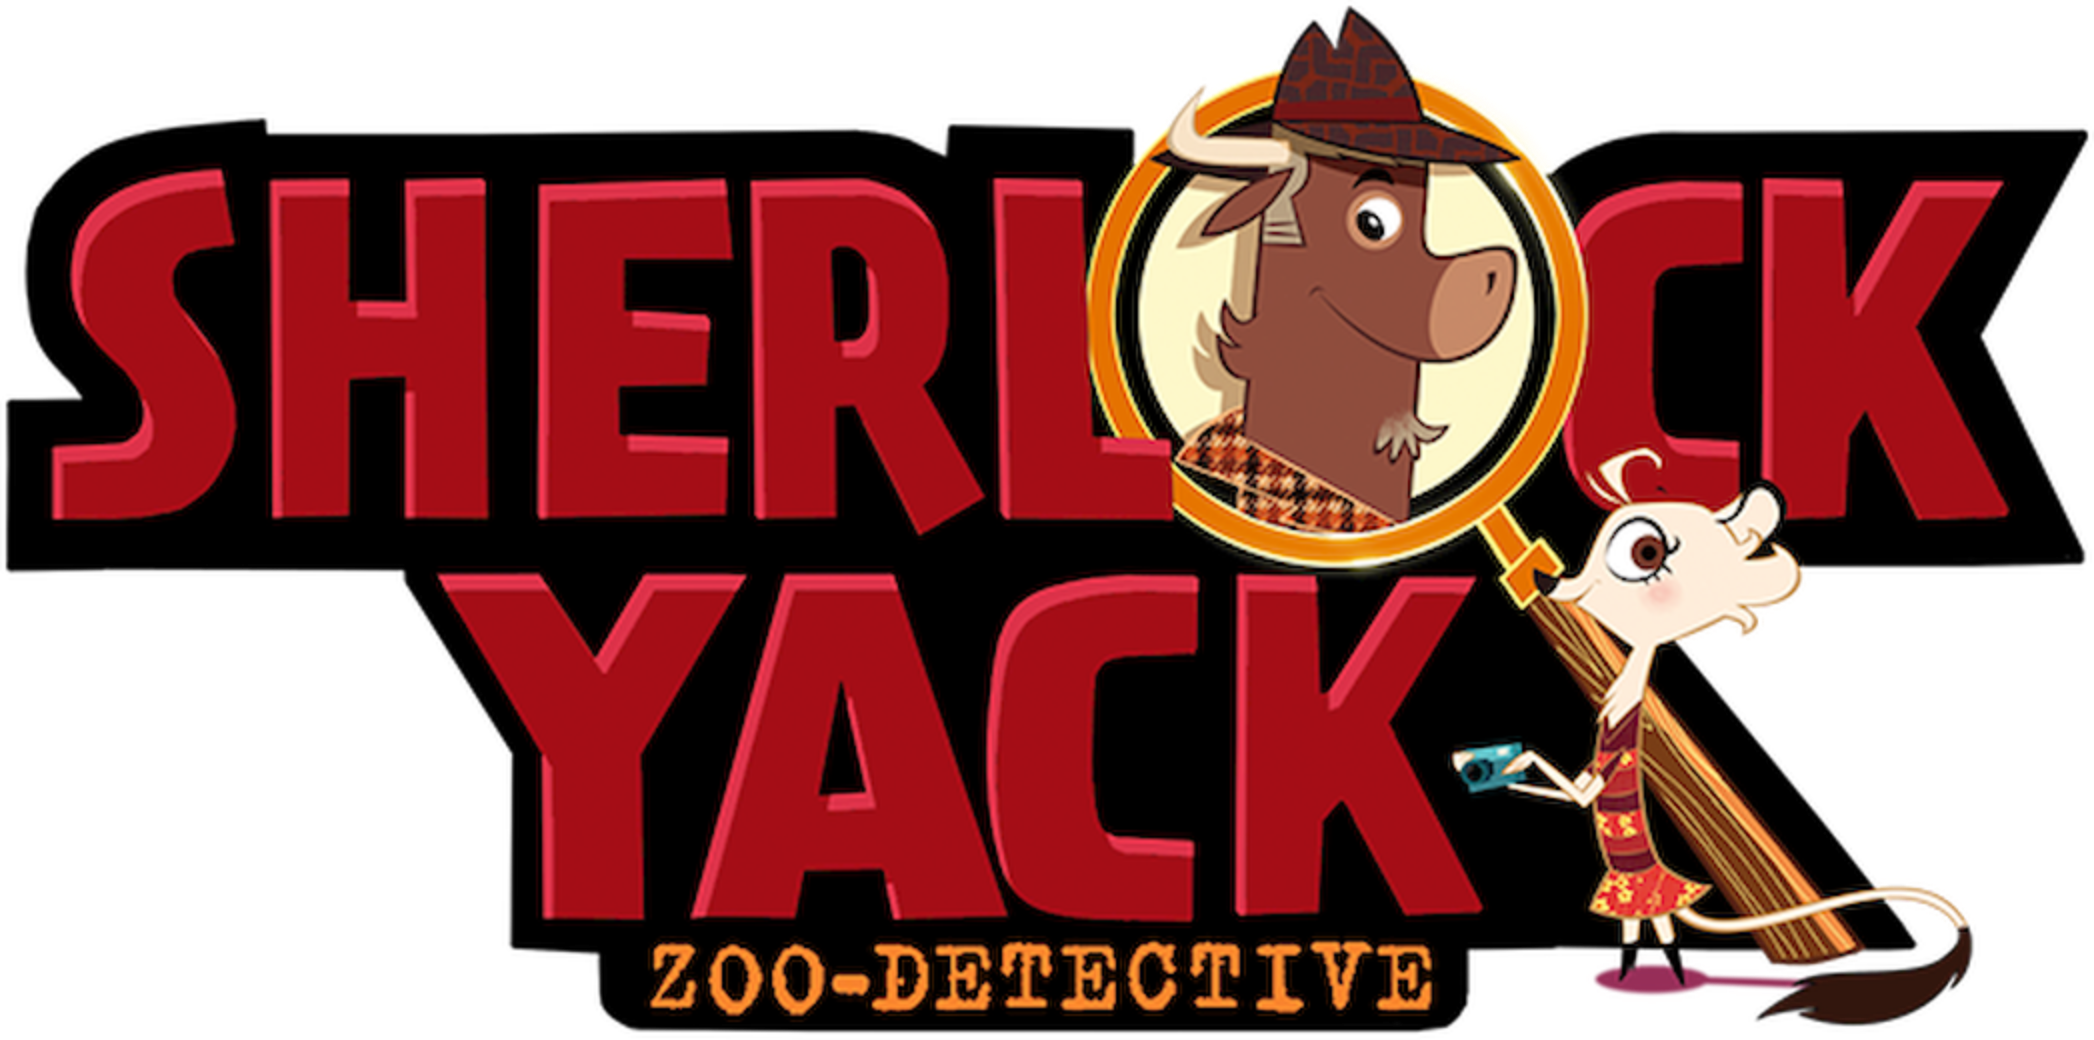 Sherlock Yack- Zoo-Detective (2 DVDs Box Set)